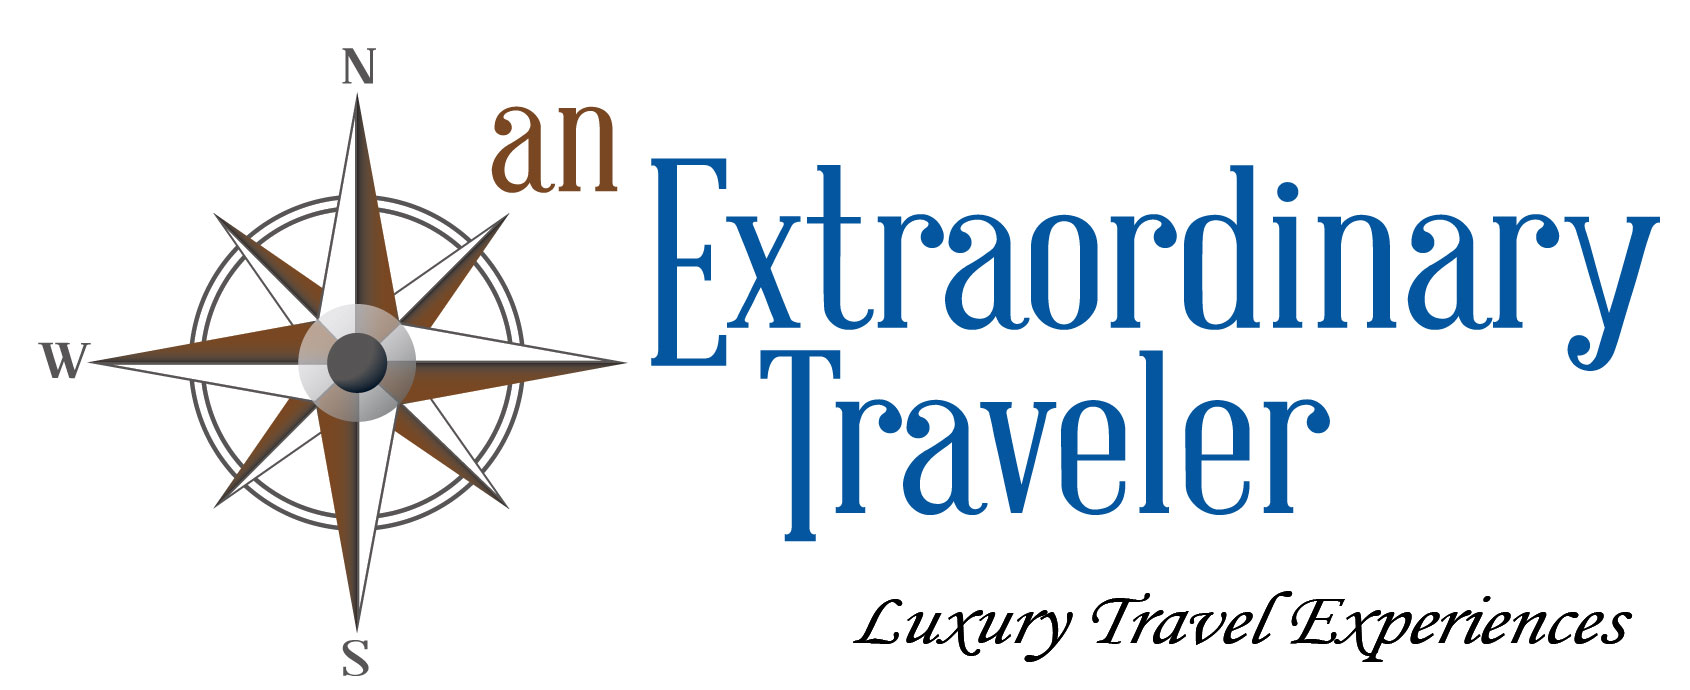 An Extraordinary Traveler